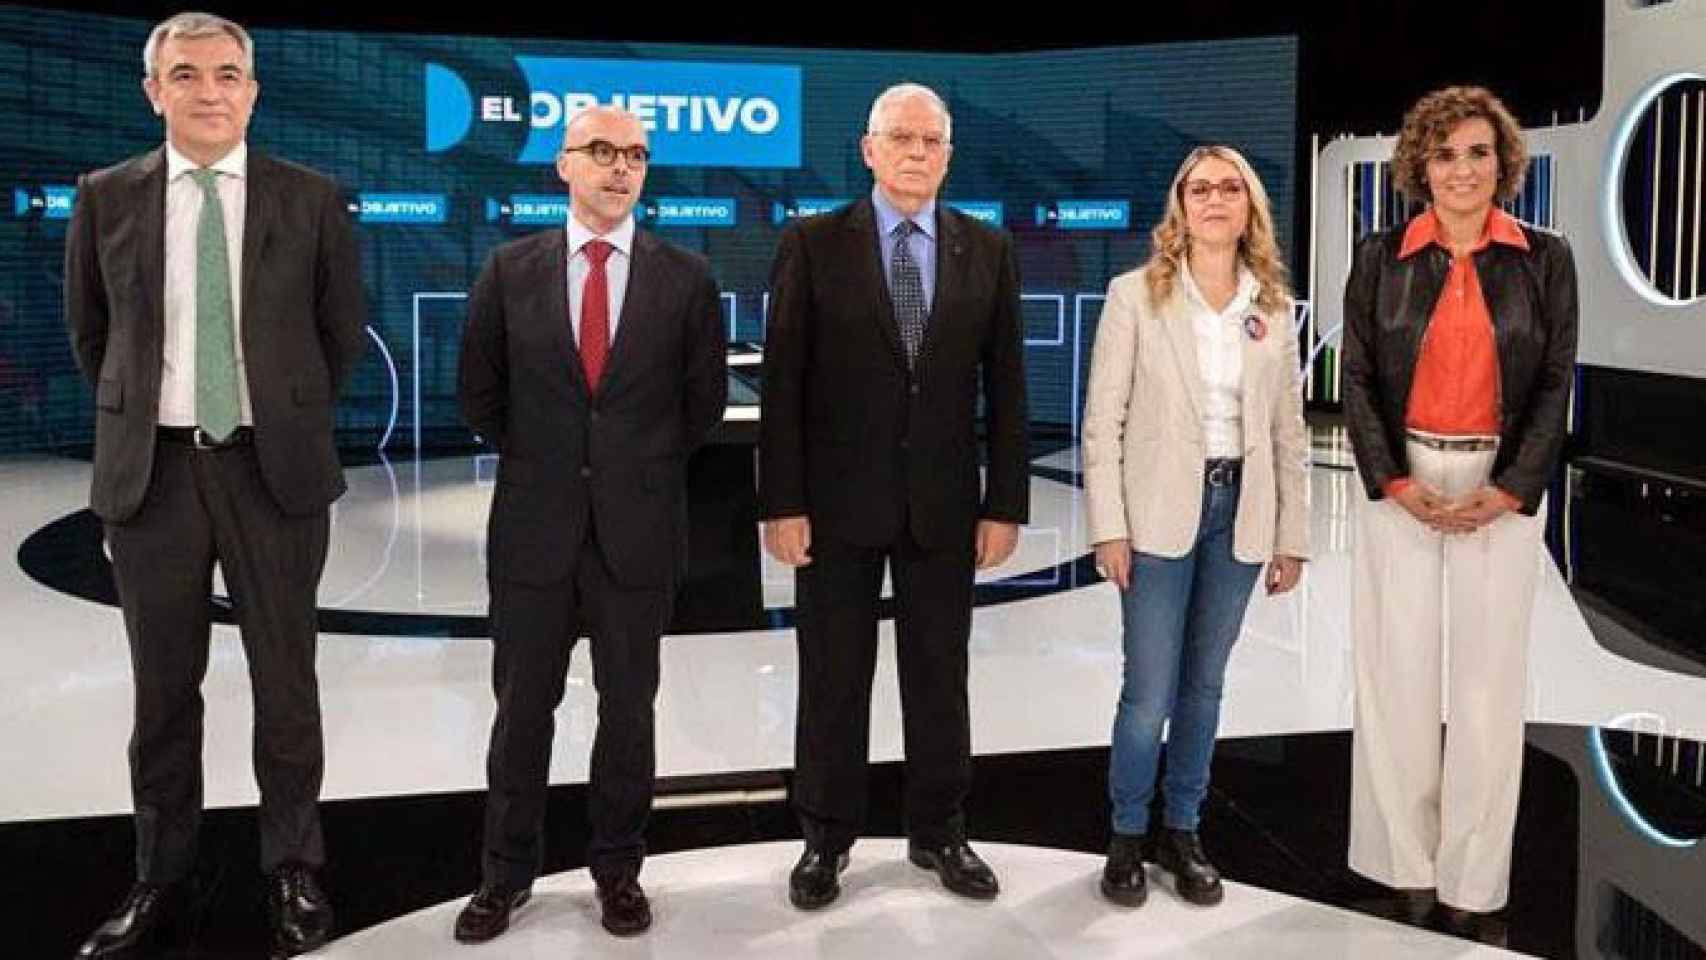 Las candidatos a las elecciones europeas (i-d) Luis Garicano (Cs); Jorge Buxadé (Vox); Josep Borell (PSOE); María Eugenia Rodríguez (Podemos); Dolors Montserrat (PP), durante el debate televisivo / EFE